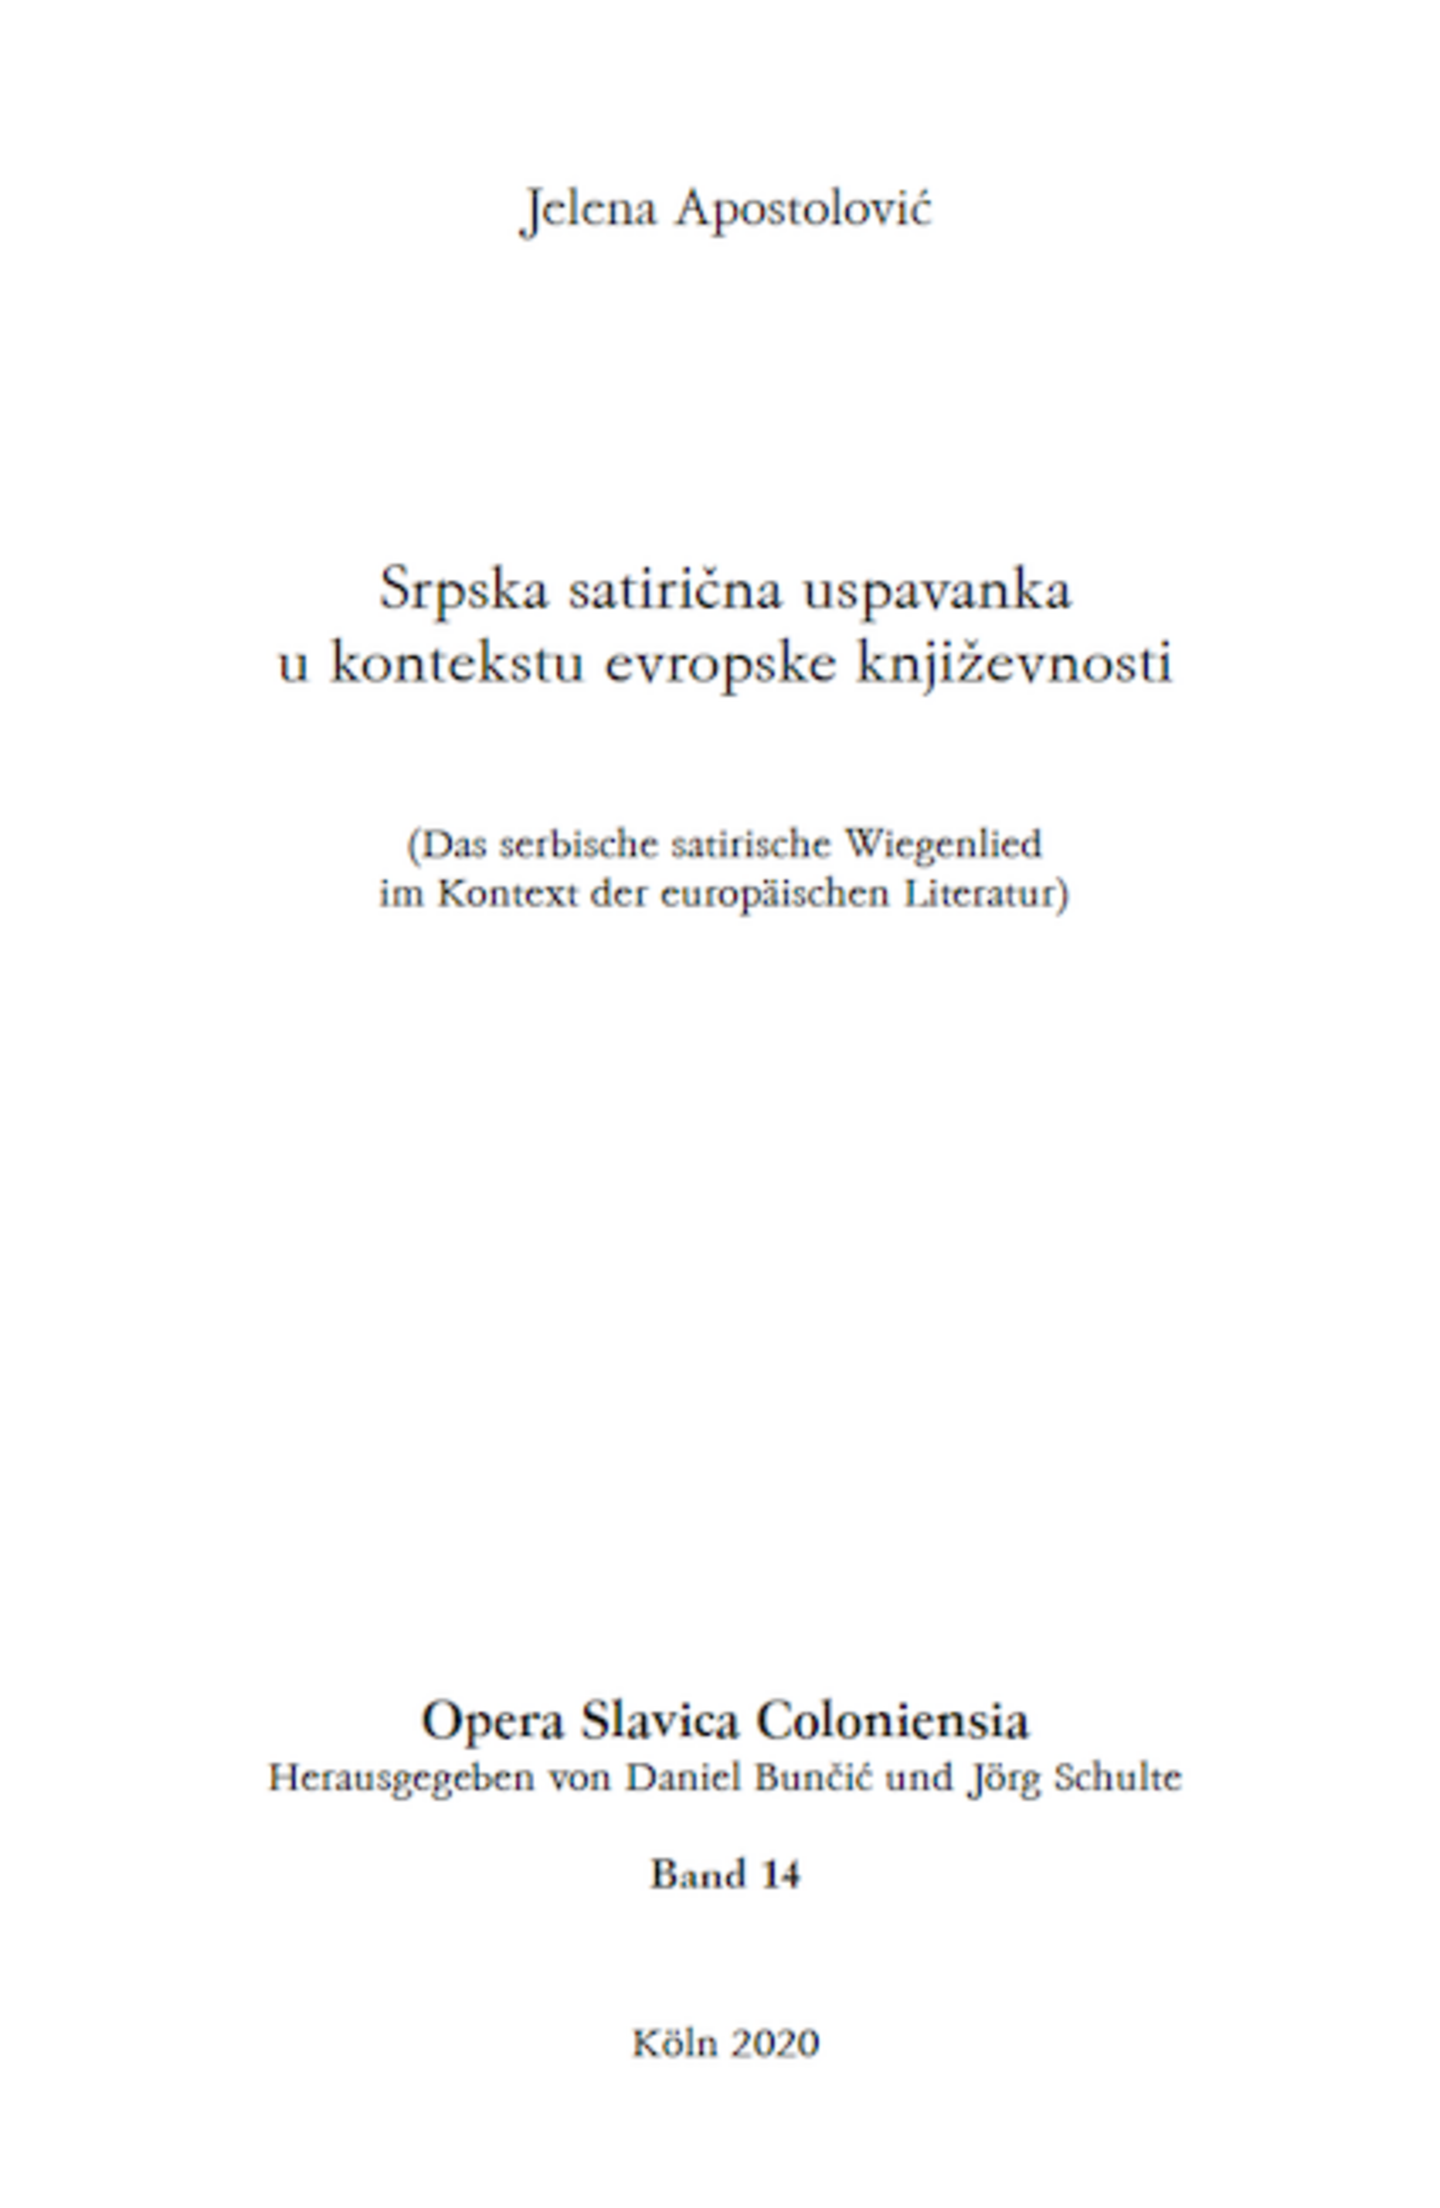 Opera Slavica Coloniensia, Bd. 14: Jelena Apostolović (2020) Srpska satirična uspavanka u kontekstu evropske književnosti